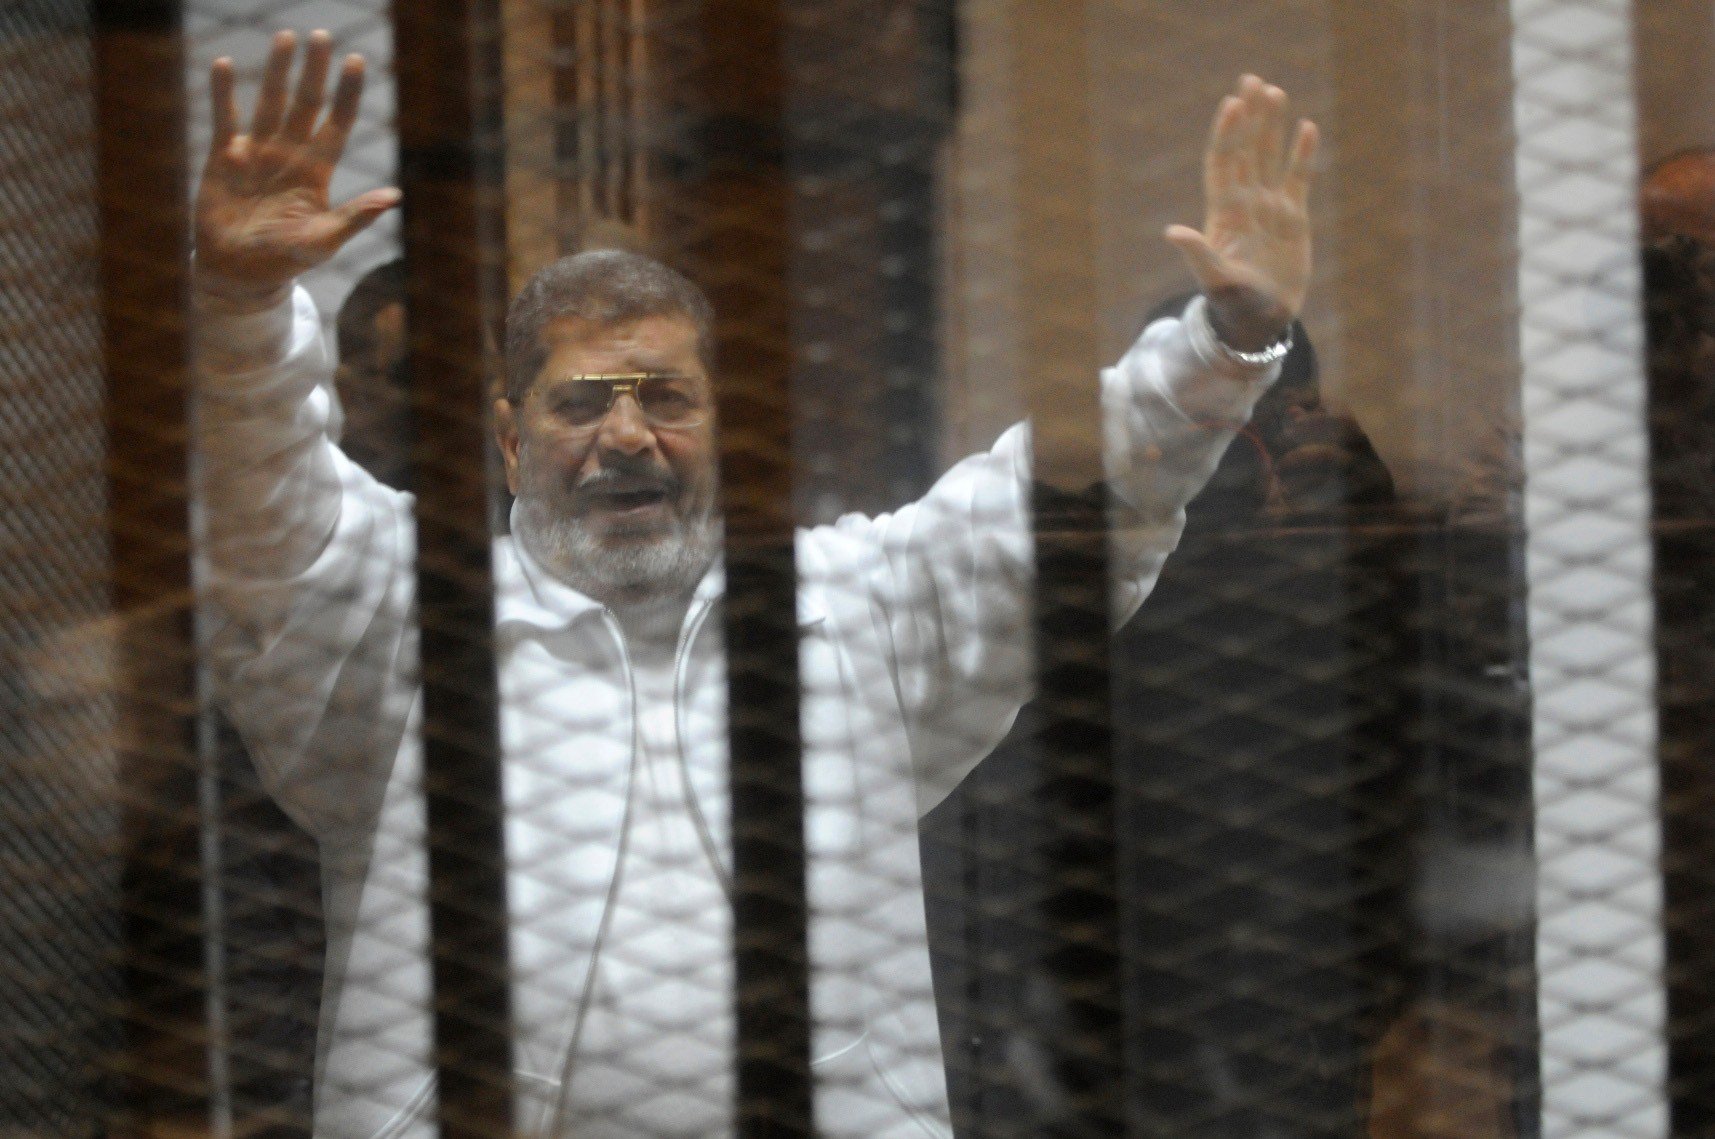 Court reverses Mohammed Morsi’ life sentence